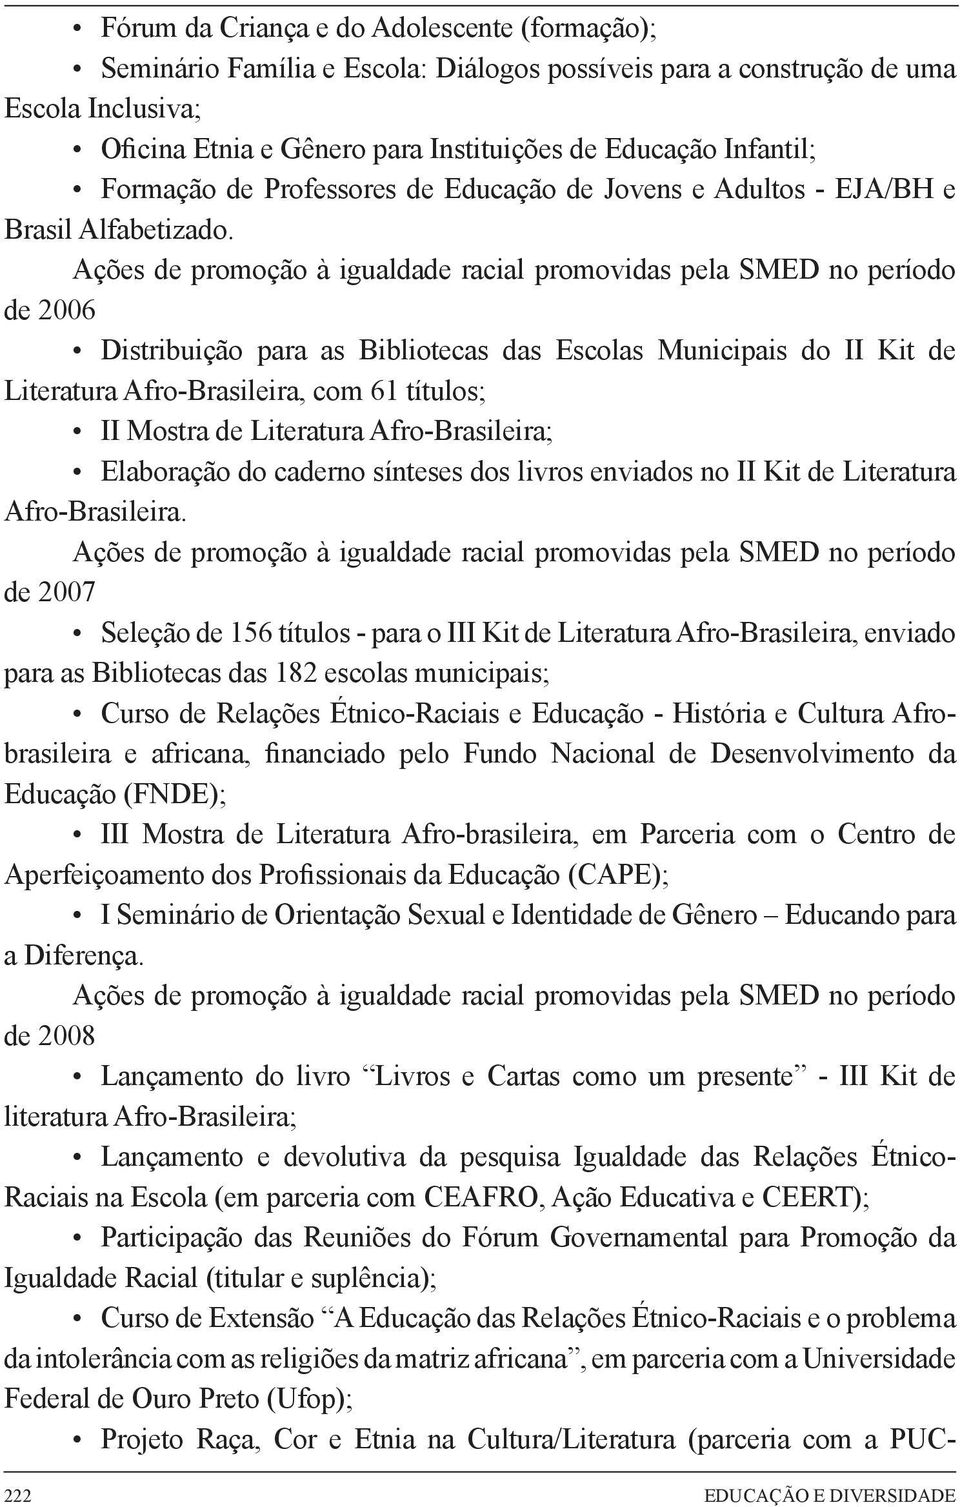 Ações de promoção à igualdade racial promovidas pela SMED no período de 2006 Distribuição para as Bibliotecas das Escolas Municipais do II Kit de Literatura Afro-Brasileira, com 61 títulos; II Mostra